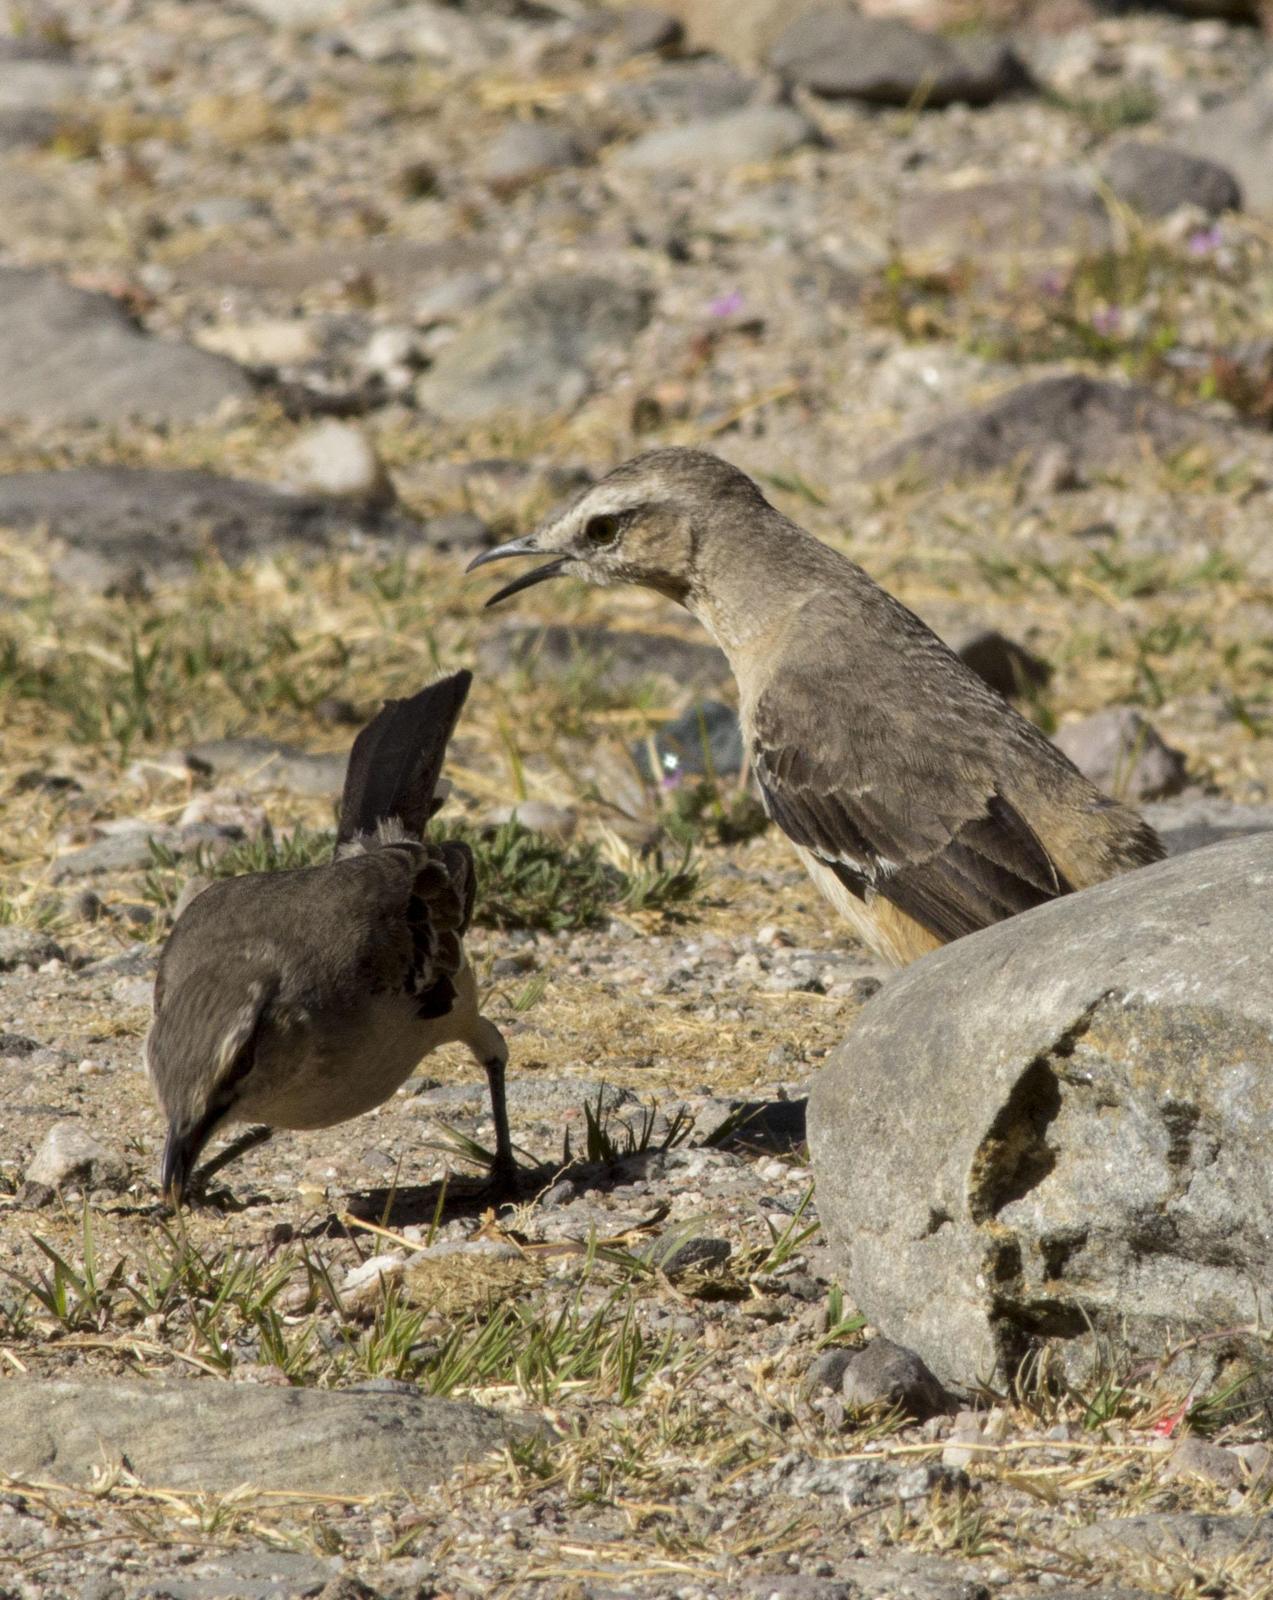 Patagonian Mockingbird Photo by Lee Harding